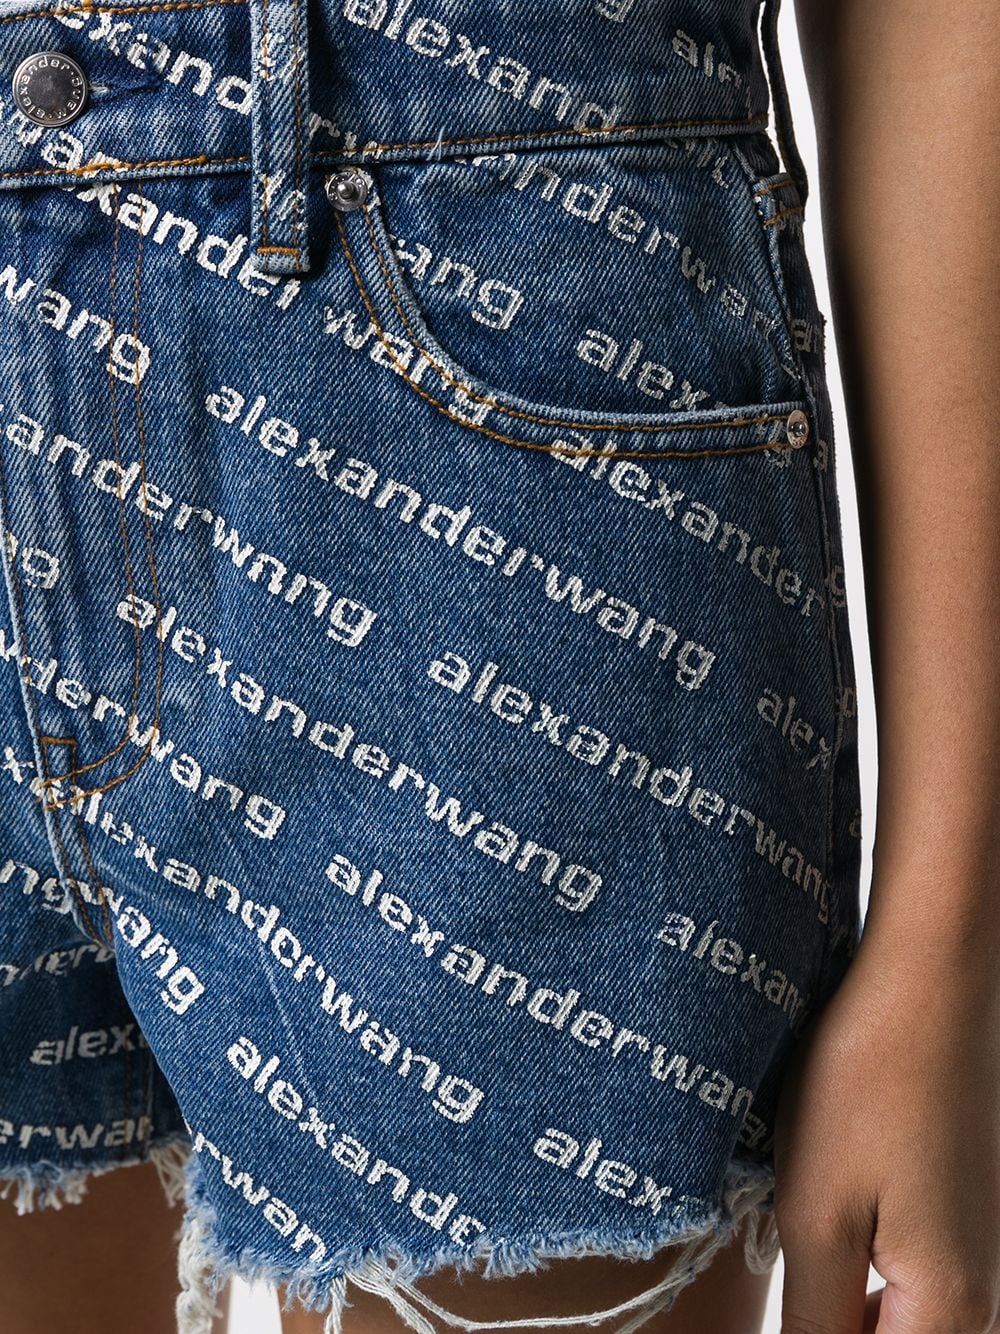 фото Alexander wang джинсовые шорты с монограммой